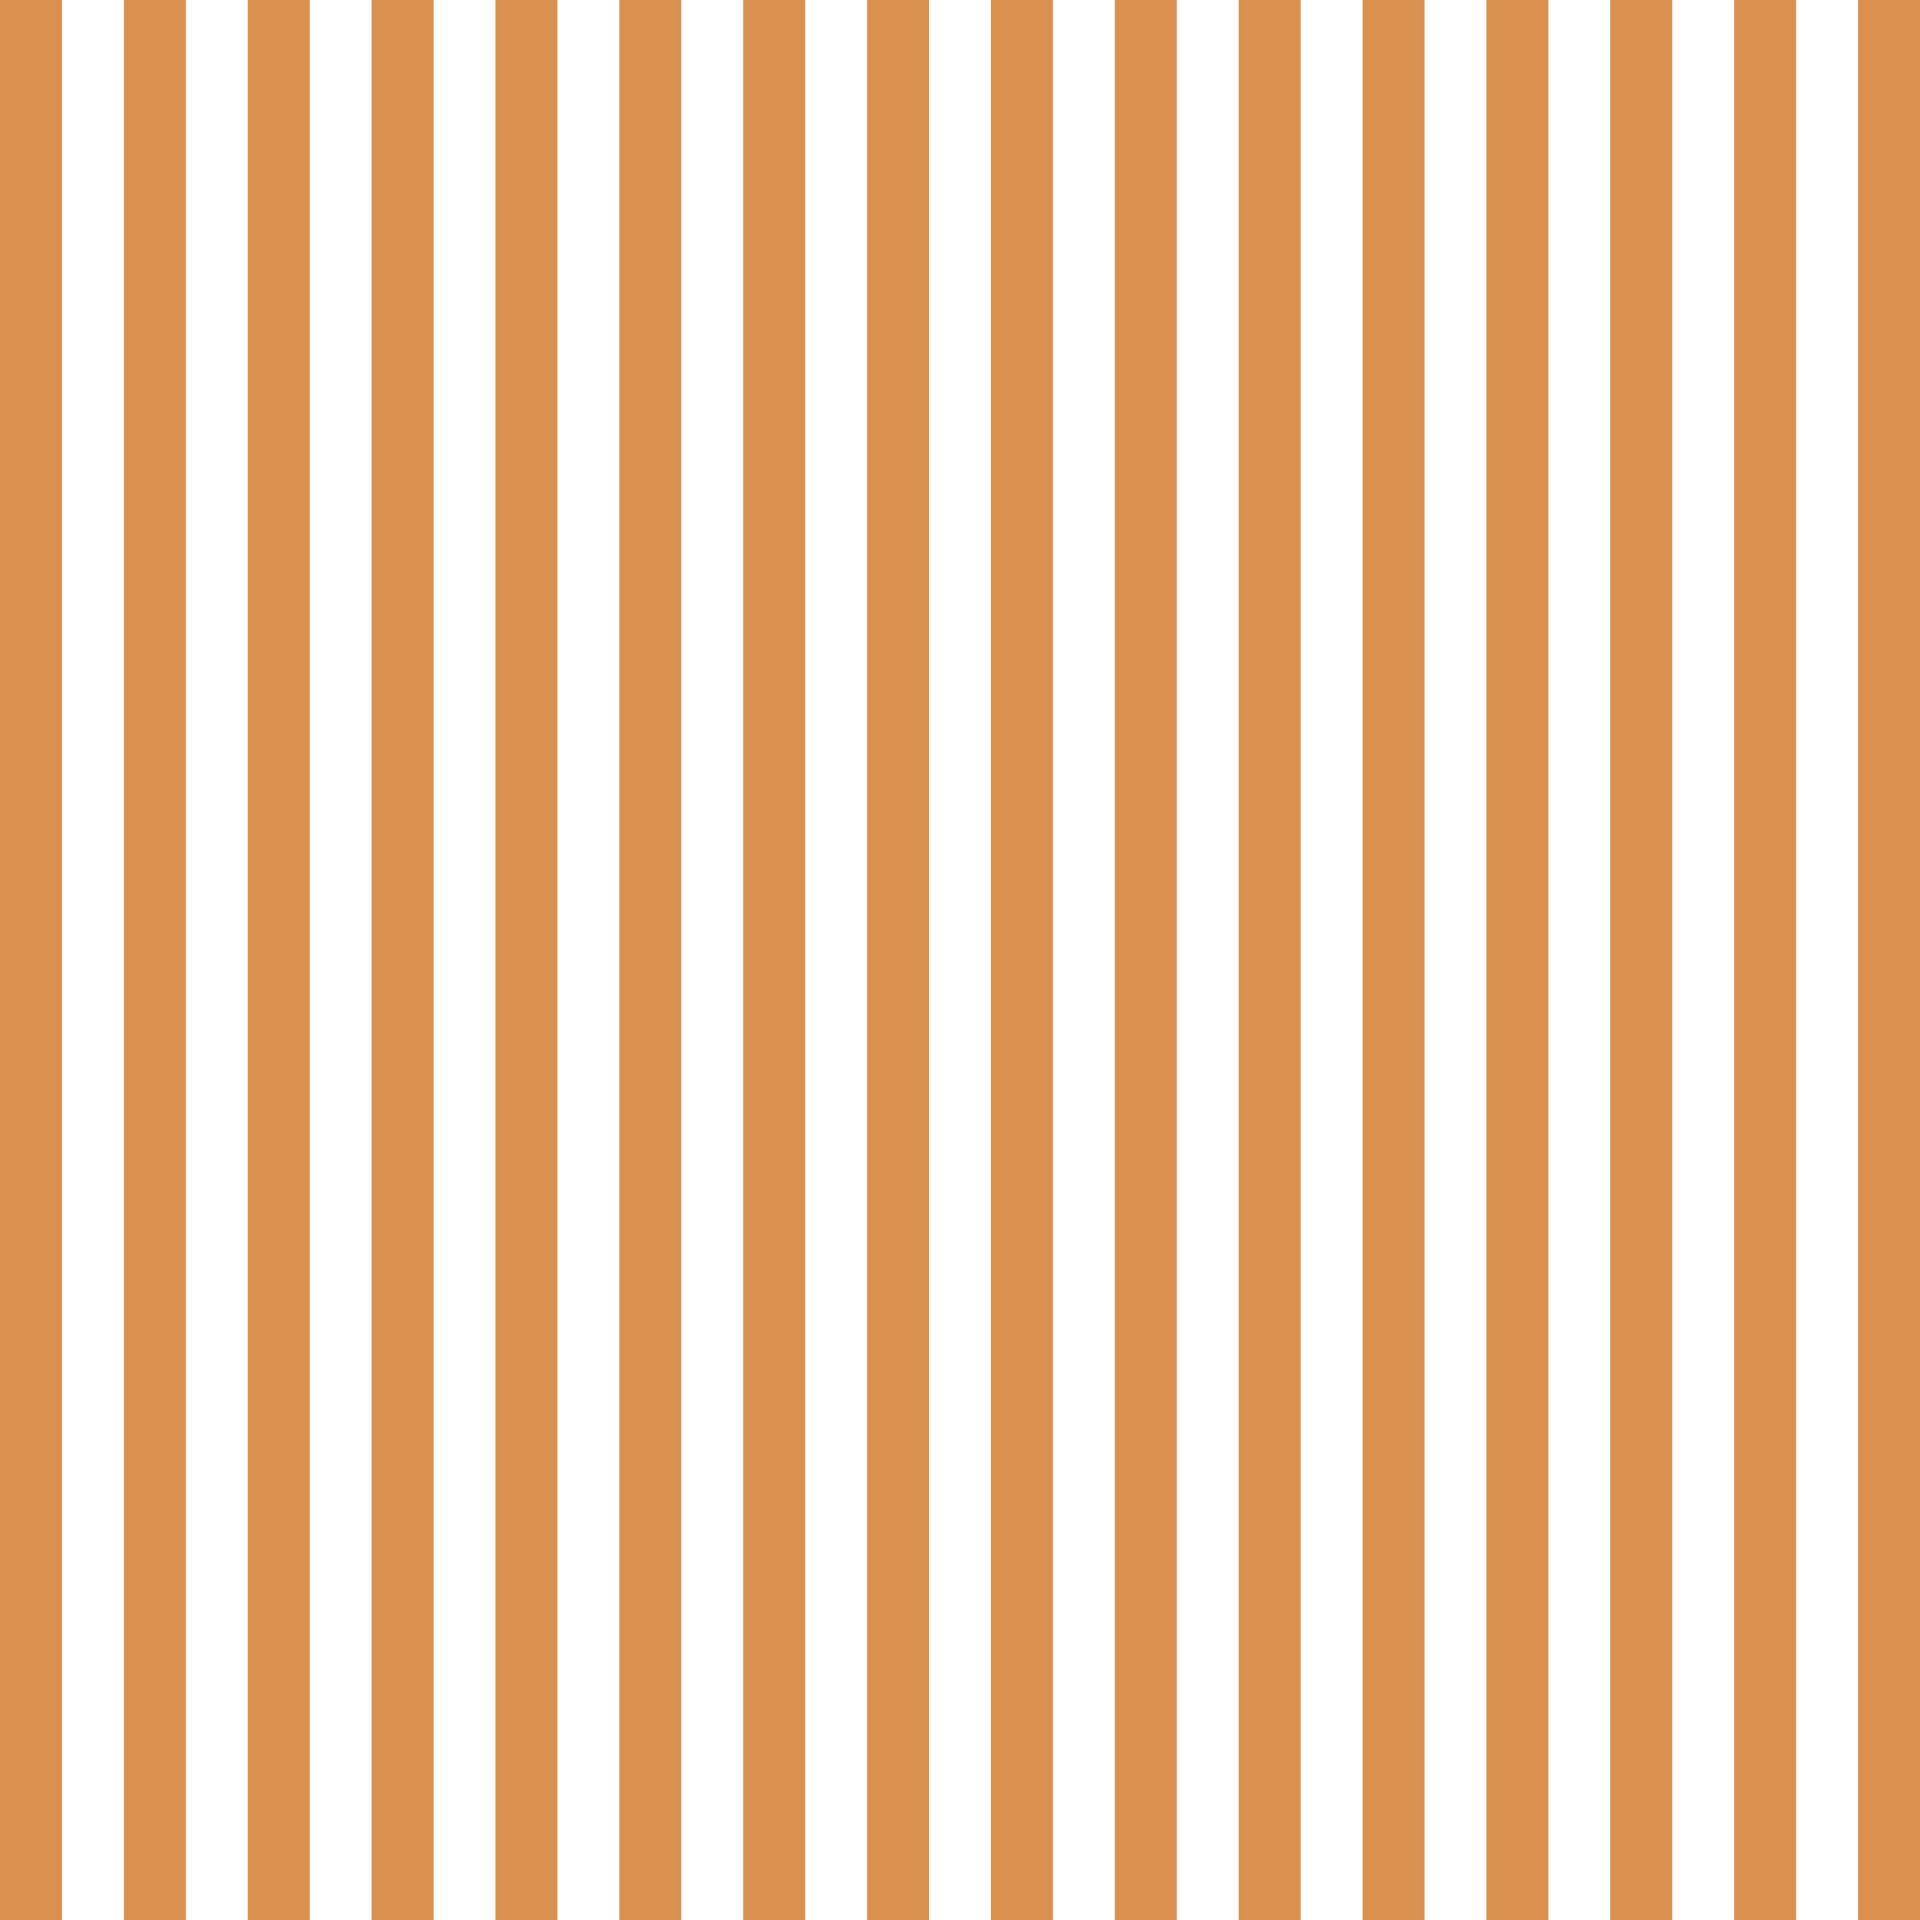 stripes pattern wallpaper free photo